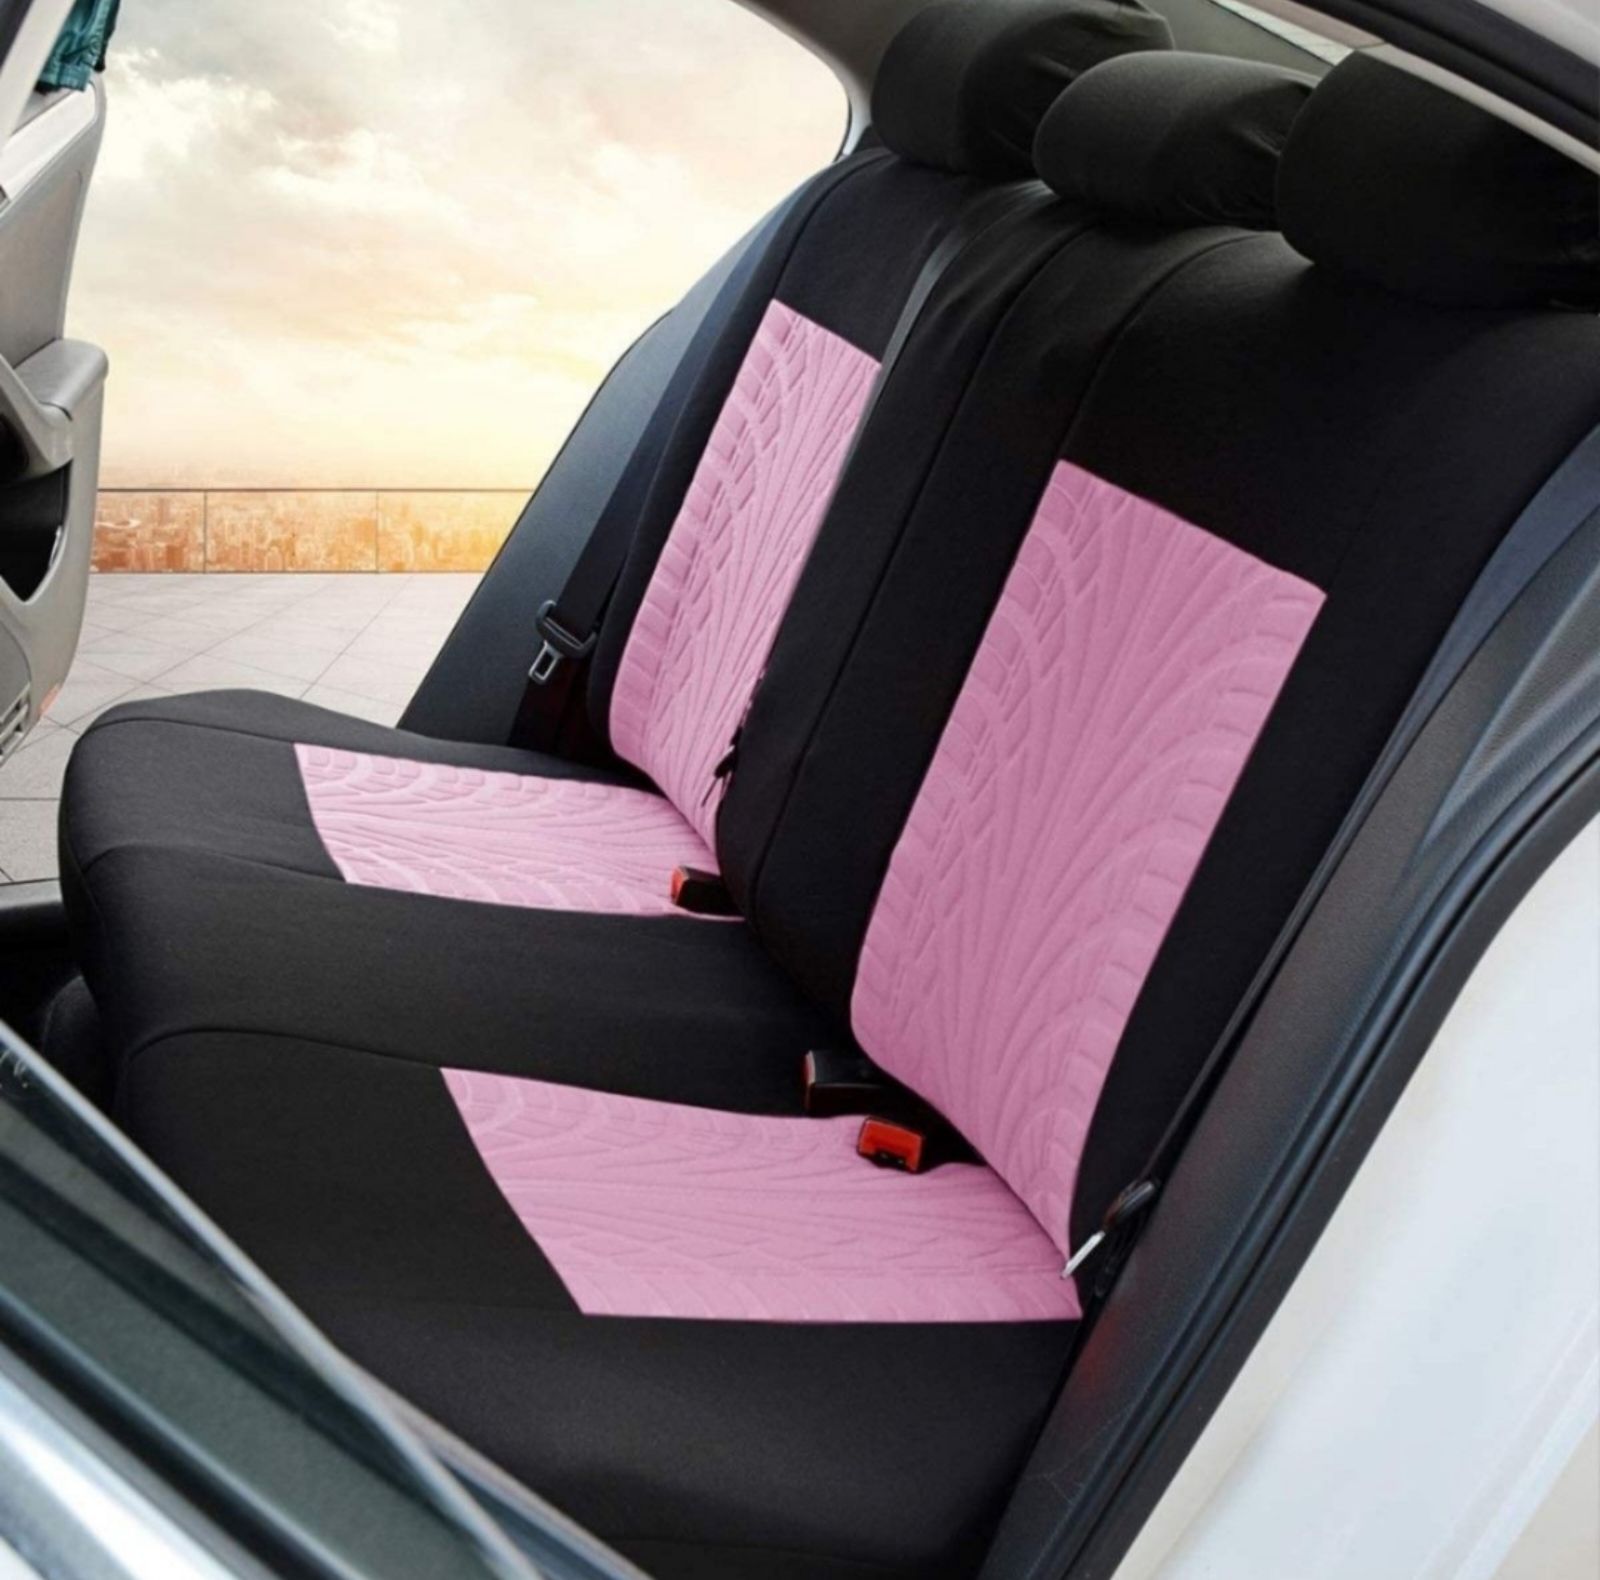 車 普通車軽自動車シートカバー9シートセット汎用 カット可能 限定色ピンク黒